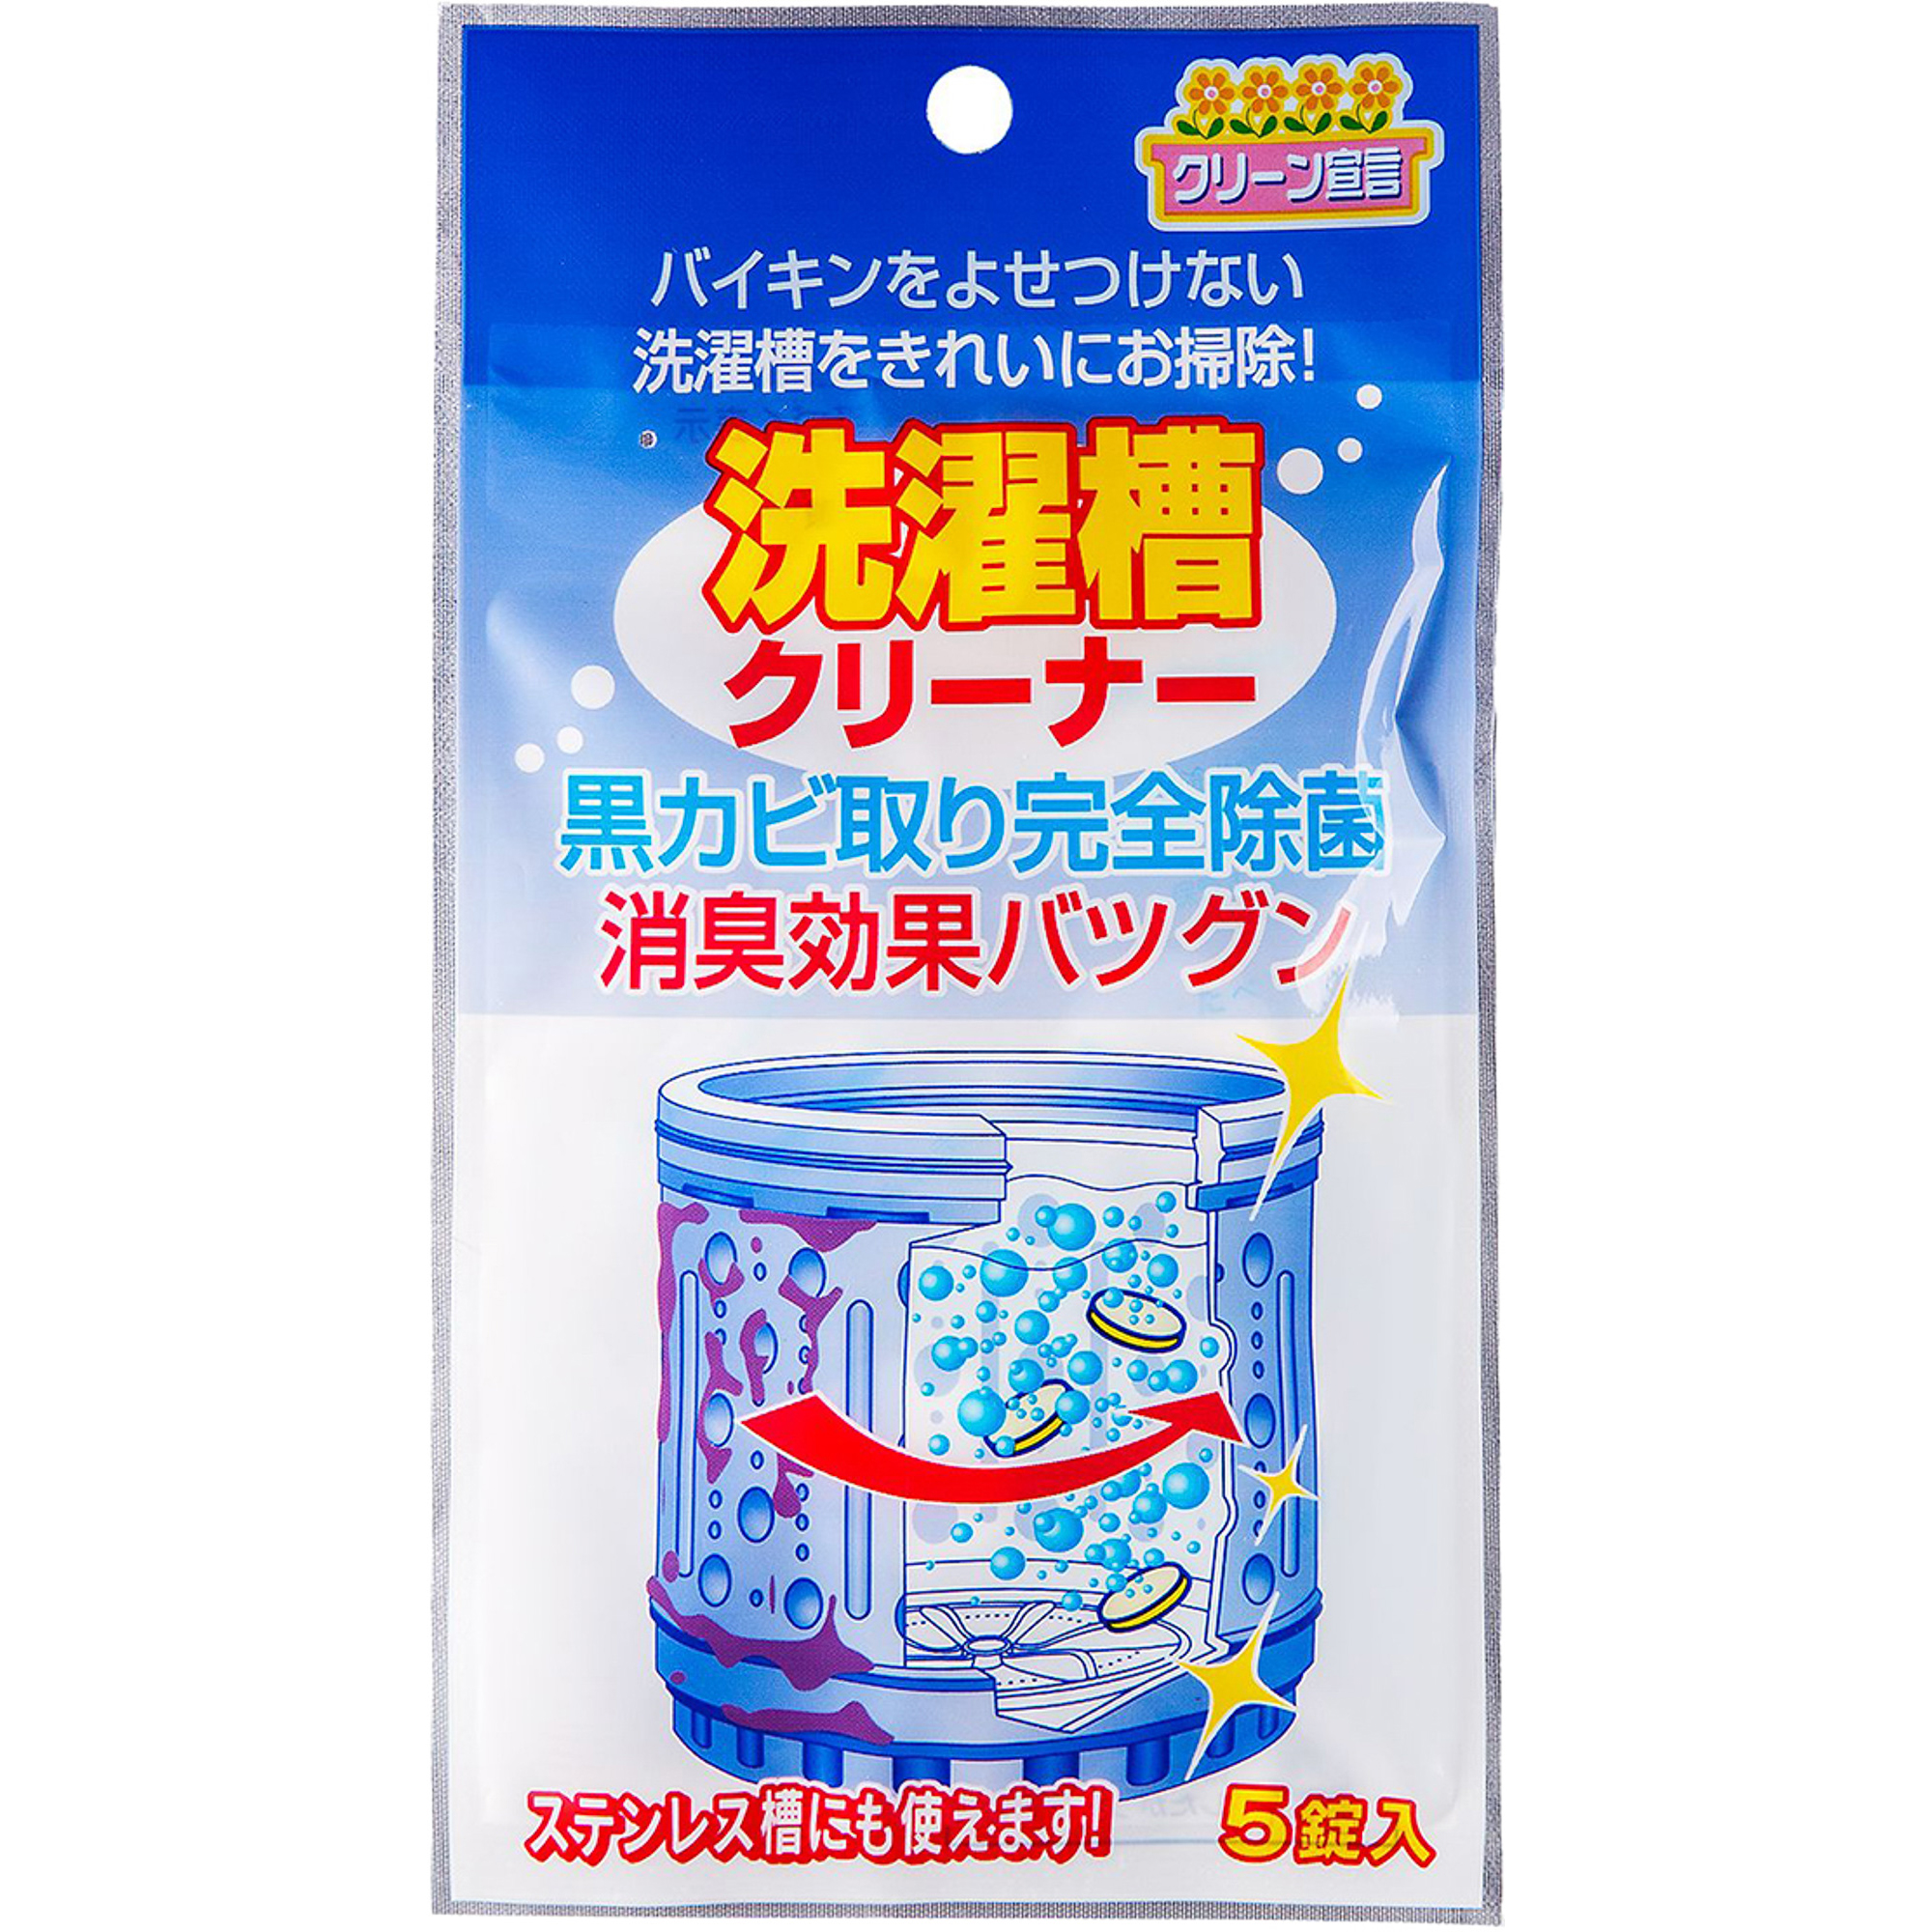 Средство Nagara Cleaning Liquid для чистки барабанов 4г x 5шт средство nagara для чистки туалета 5 шт